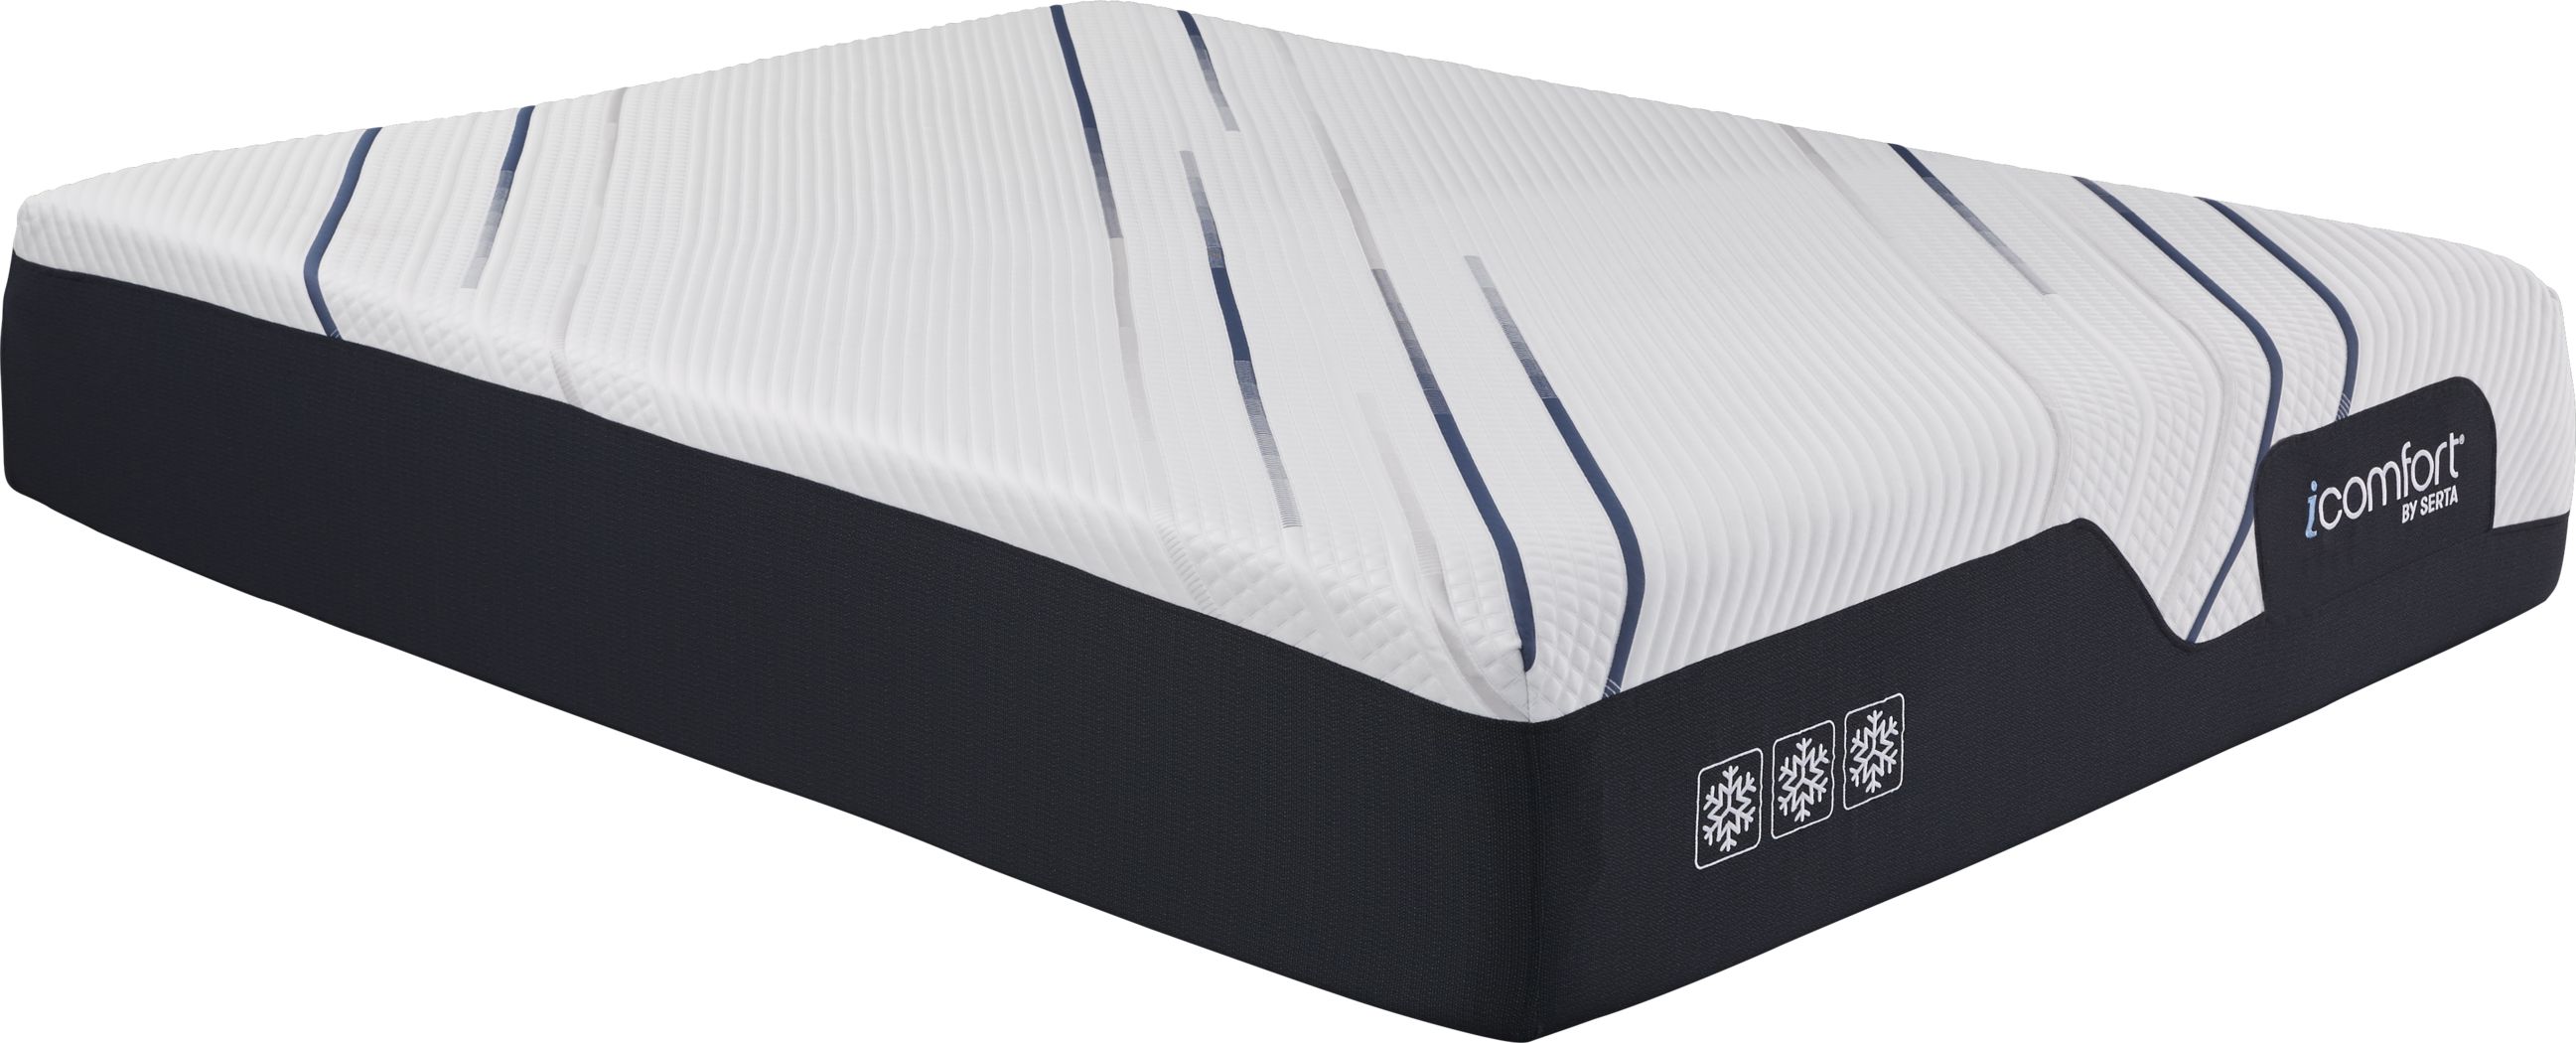 icomfort mattress protector queen